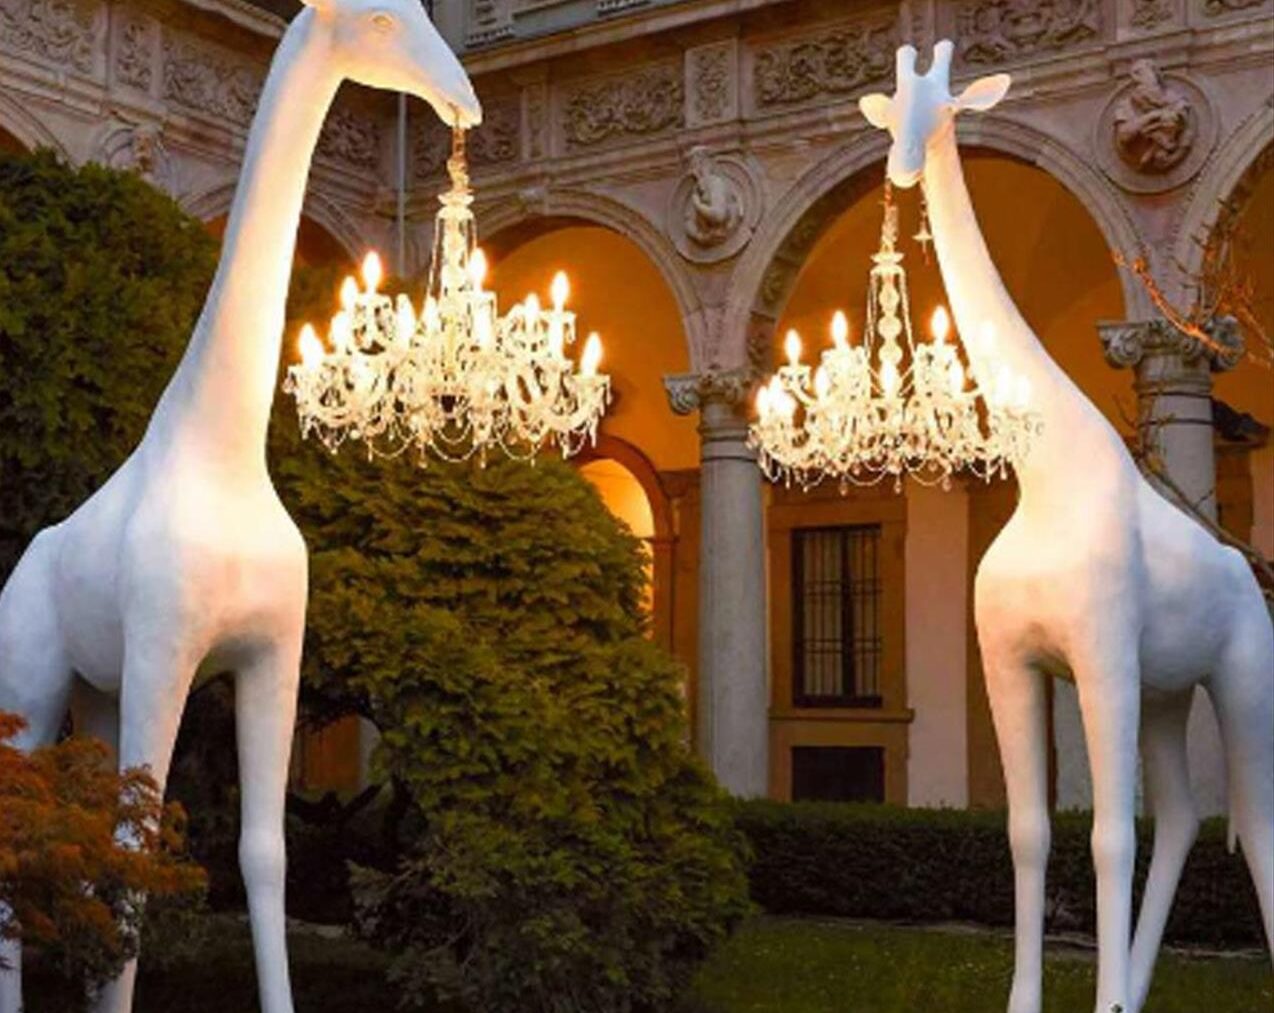 Giraffe-In-Love-XL-Outdoor-4-Metres-White